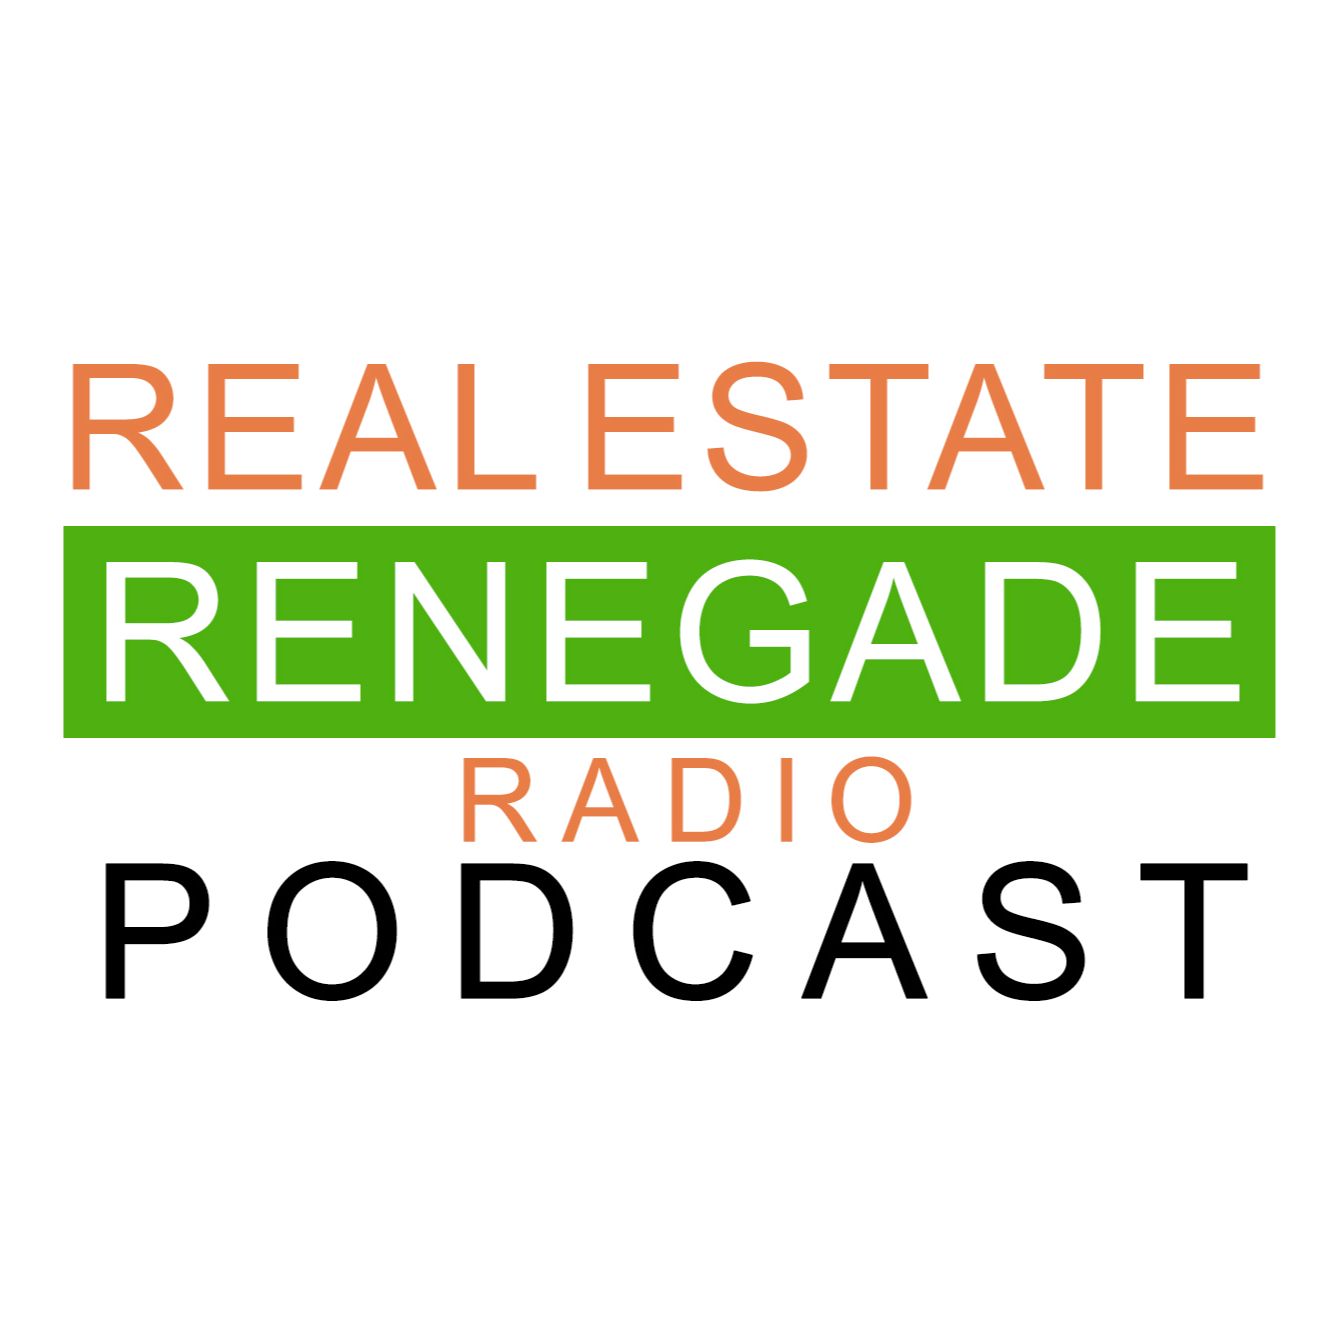 Real Estate Renegade Radio